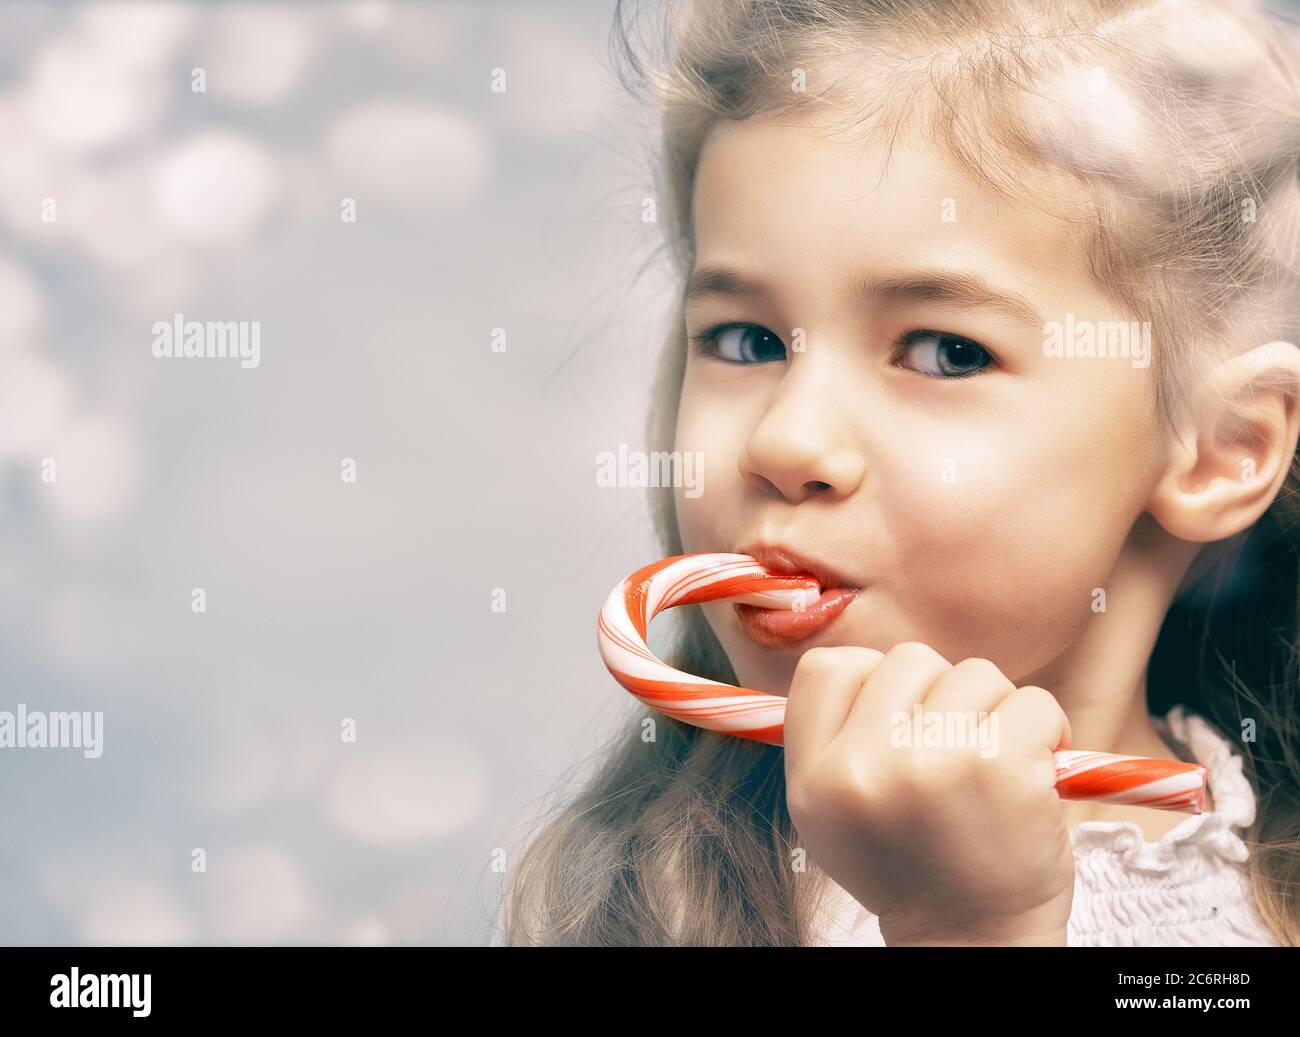 little girl eats a candy bar Stock Photo